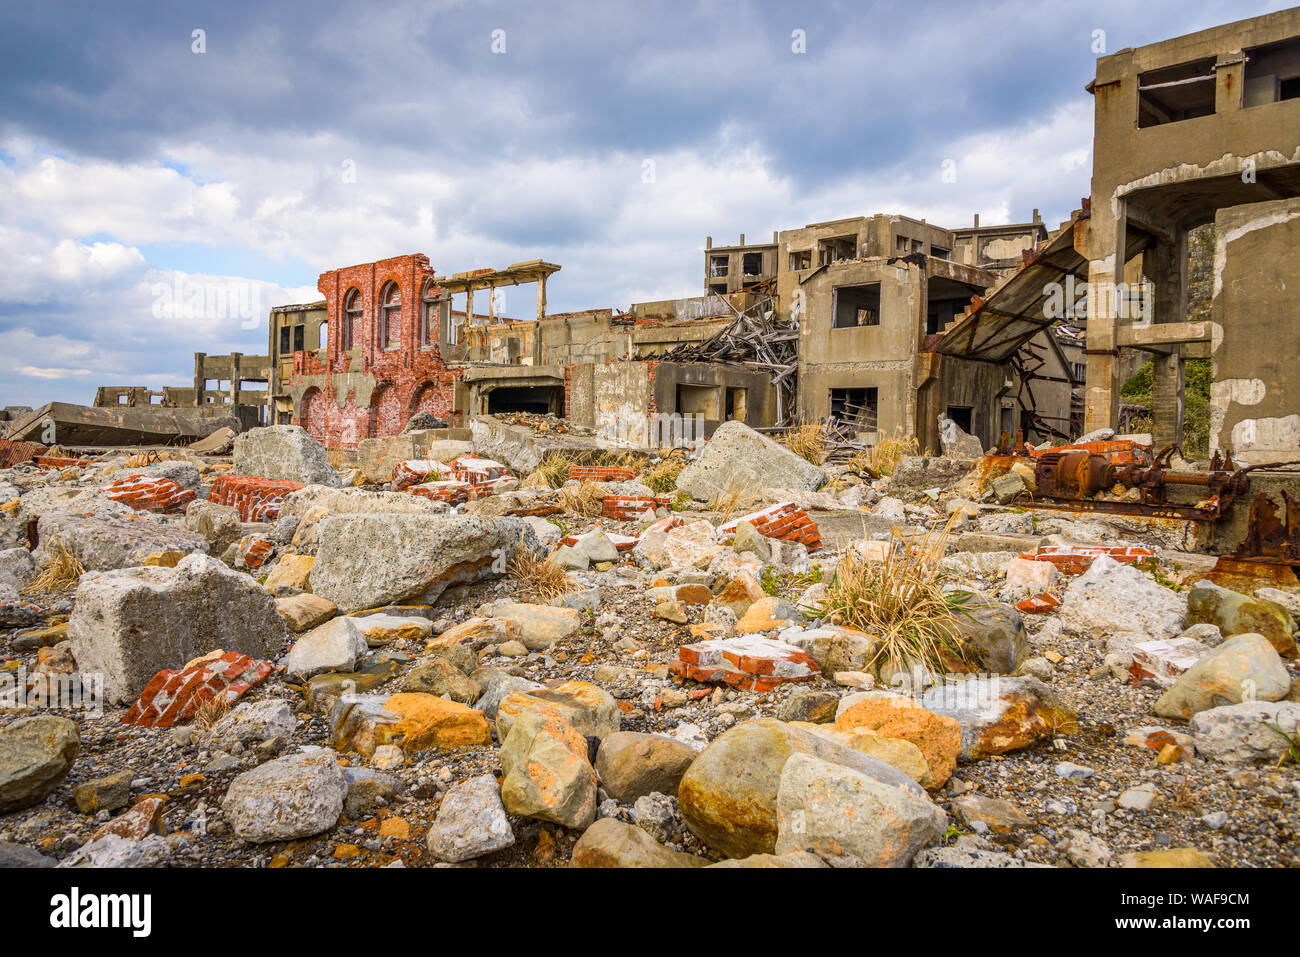 Ruines sur l'île de Gunkanjima abandonné au large de la côte de la préfecture de Nagasaki, Japon. Banque D'Images